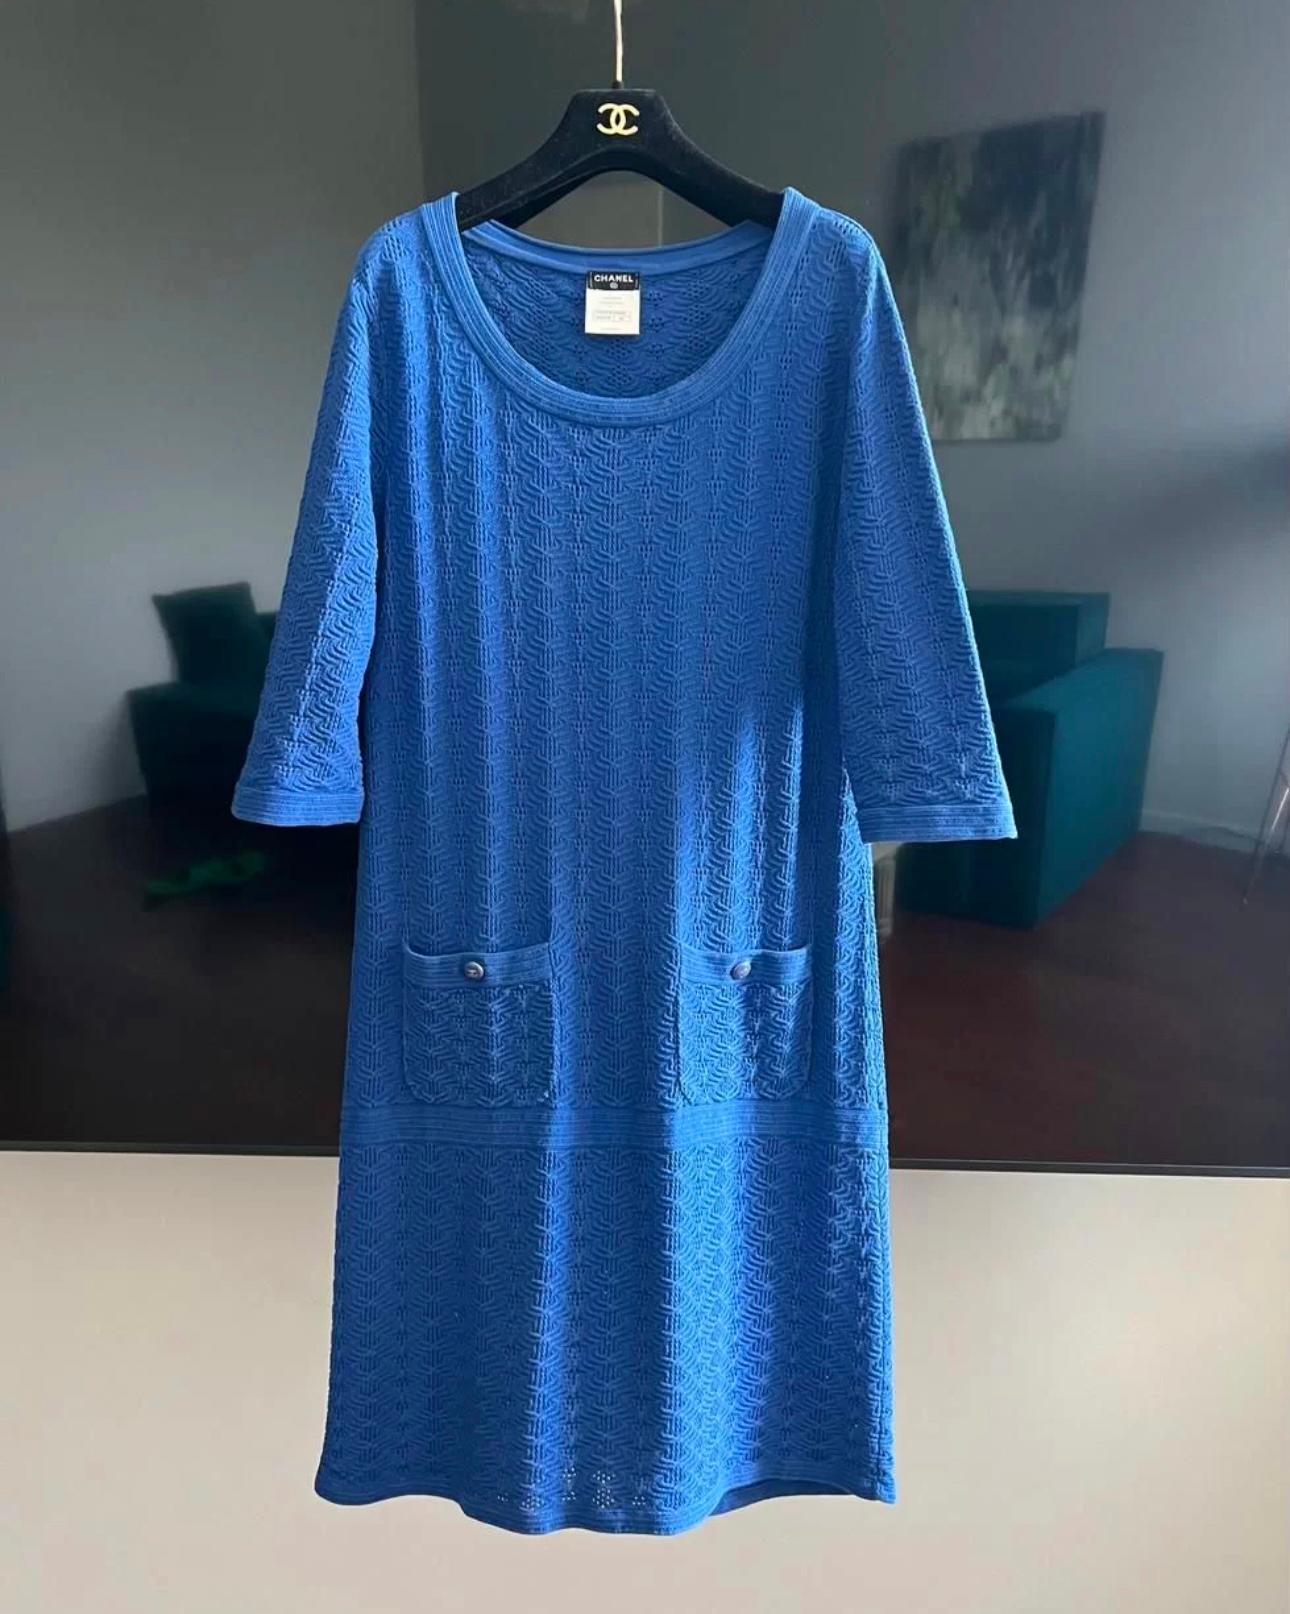 Charmante robe d'été Chanel bleu roi avec boutons logo CC : de Paris / SINGAPORE Collection Cruise
Taille 38 FR. L'état est impeccable.
